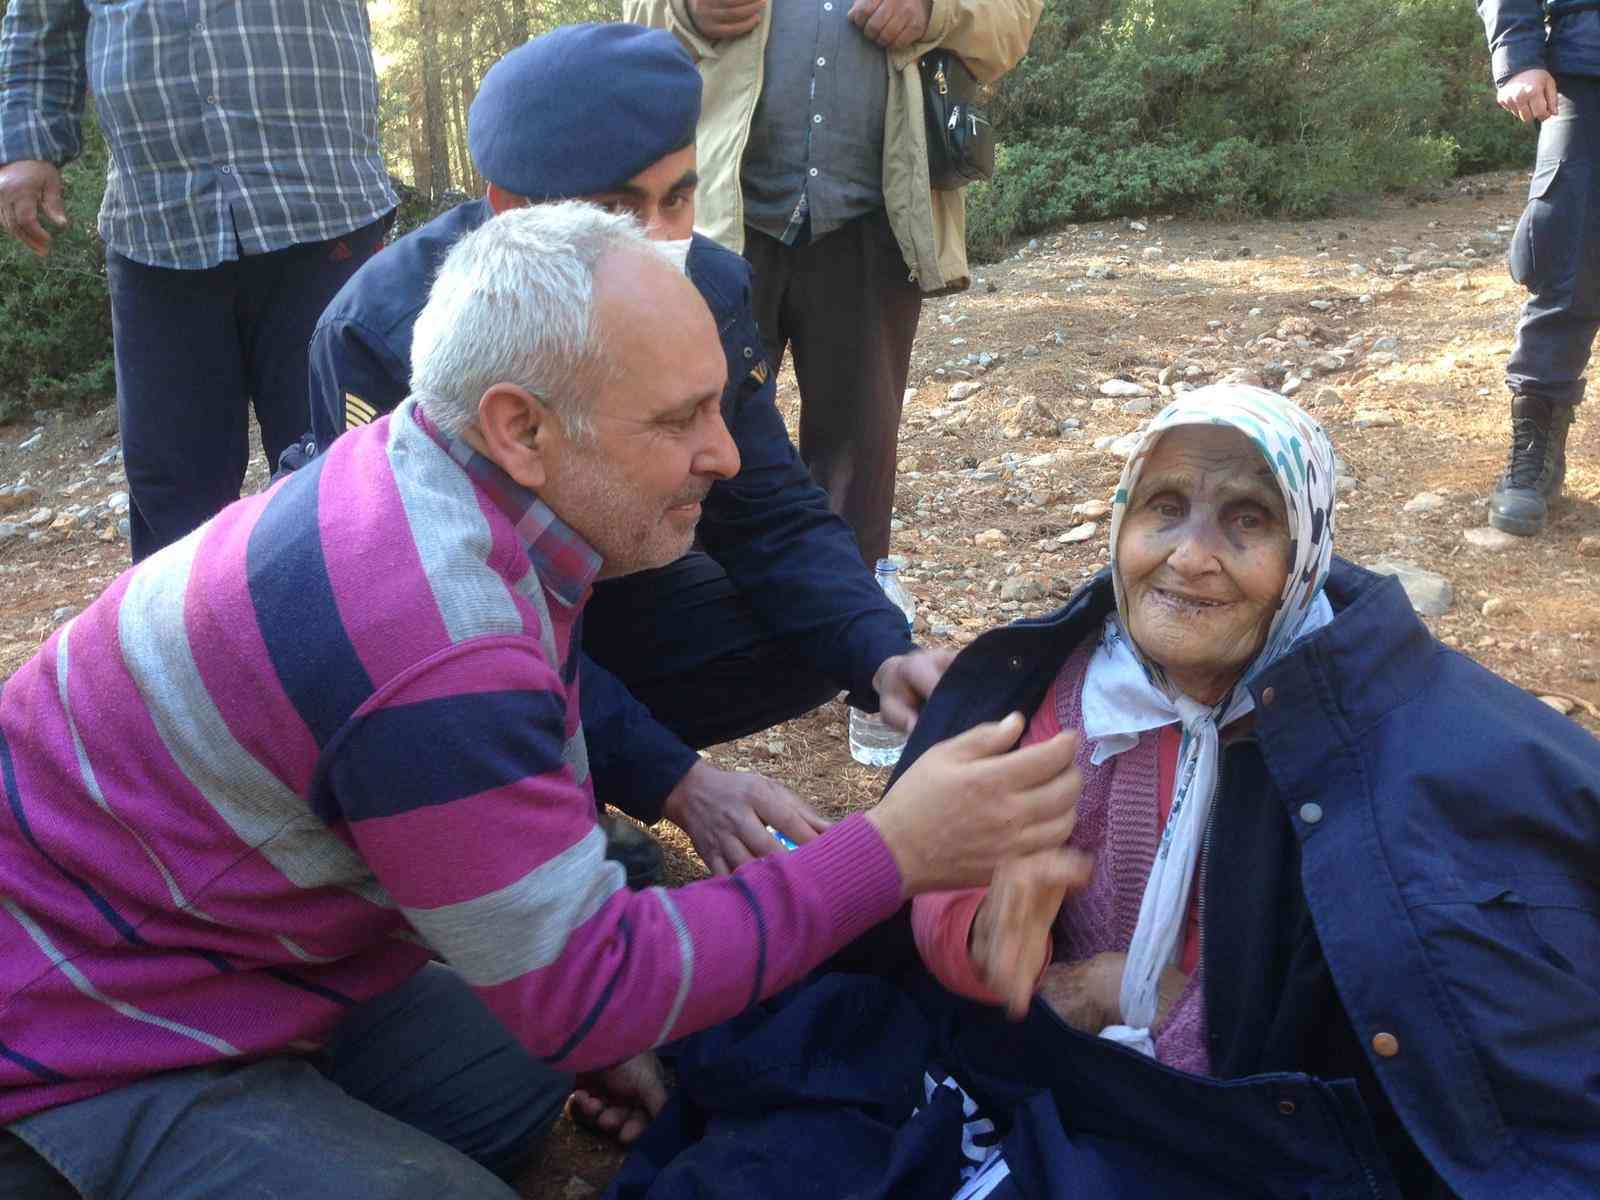 100 saattir dağ taş aranan yaşlı kadını İHA muhabiri buldu #denizli